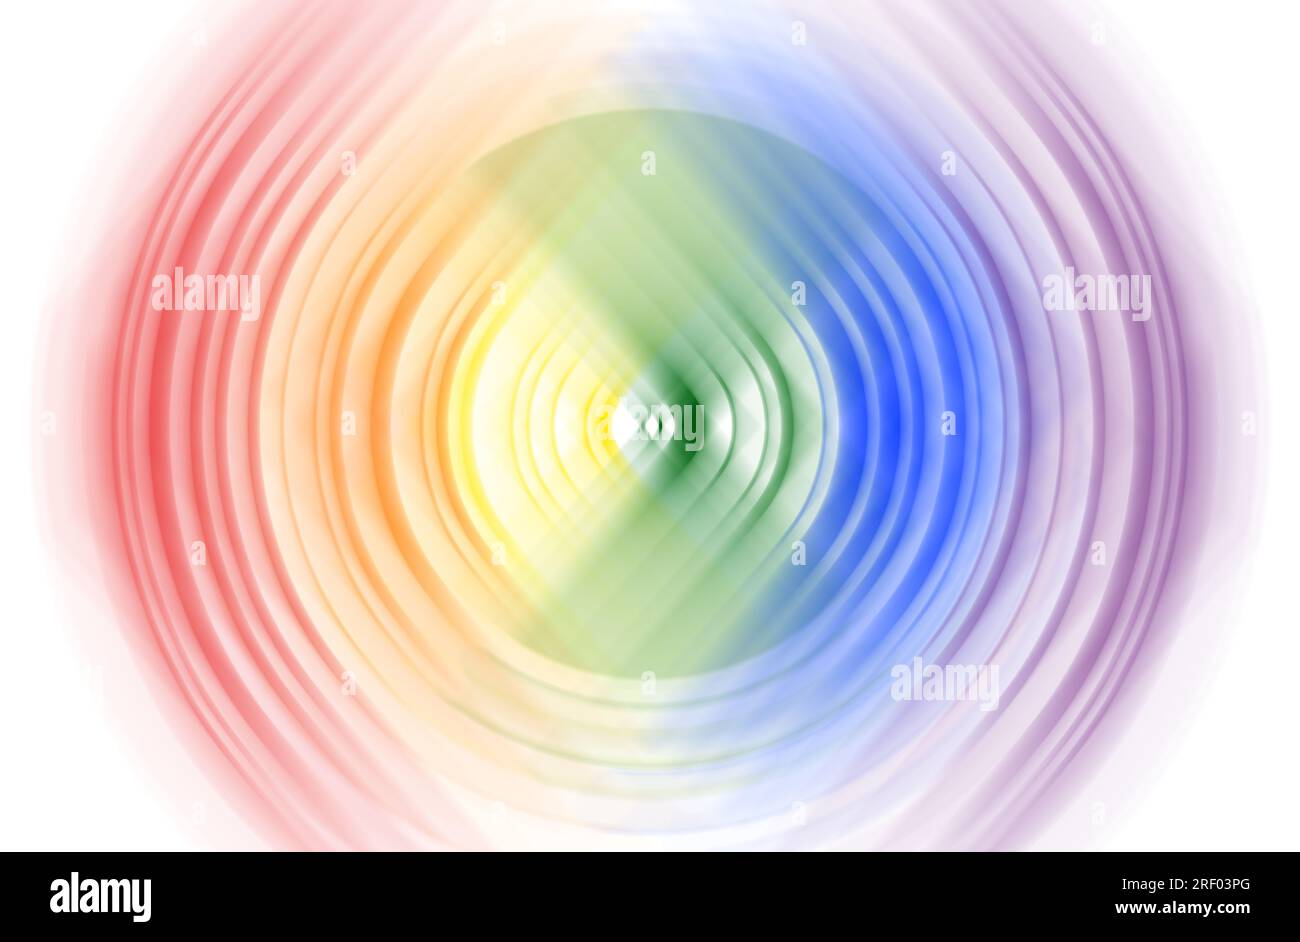 Fond abstrait d'effet de flou de spin radial circulaire de couleur arc-en-ciel. Concept de drapeau du mouvement gay Pride & LGBT. Fond multicolore lumineux et flou. Banque D'Images